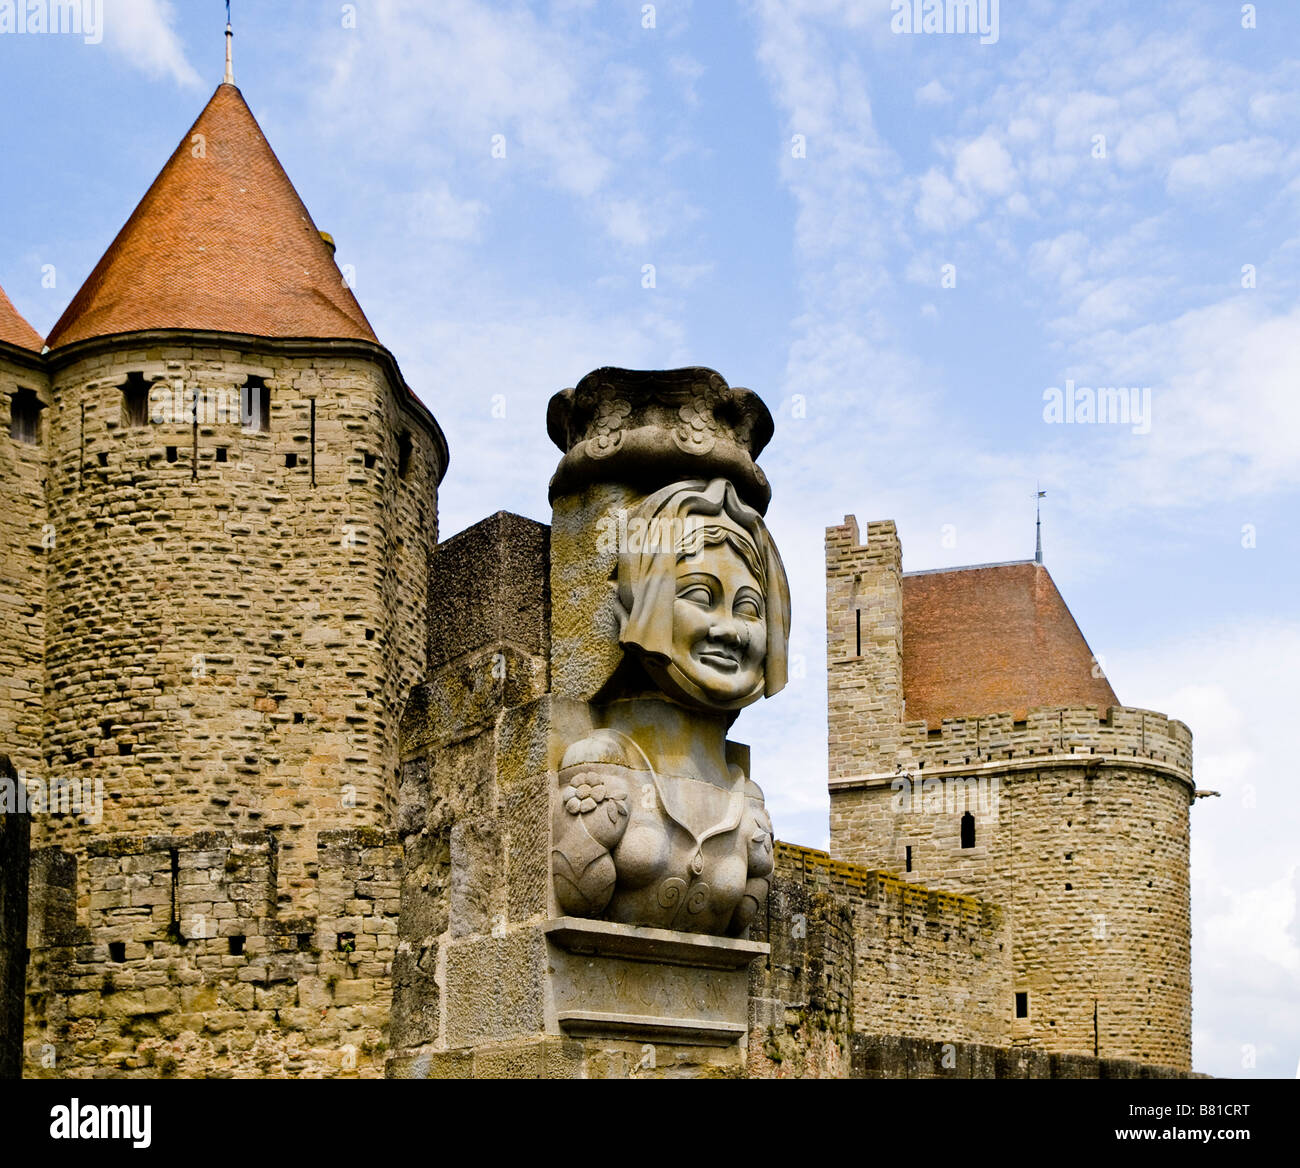 Statua di porta Narbonense a Carcassonne nel Languedoc Roussillon regione del sud-ovest della Francia. Foto Stock